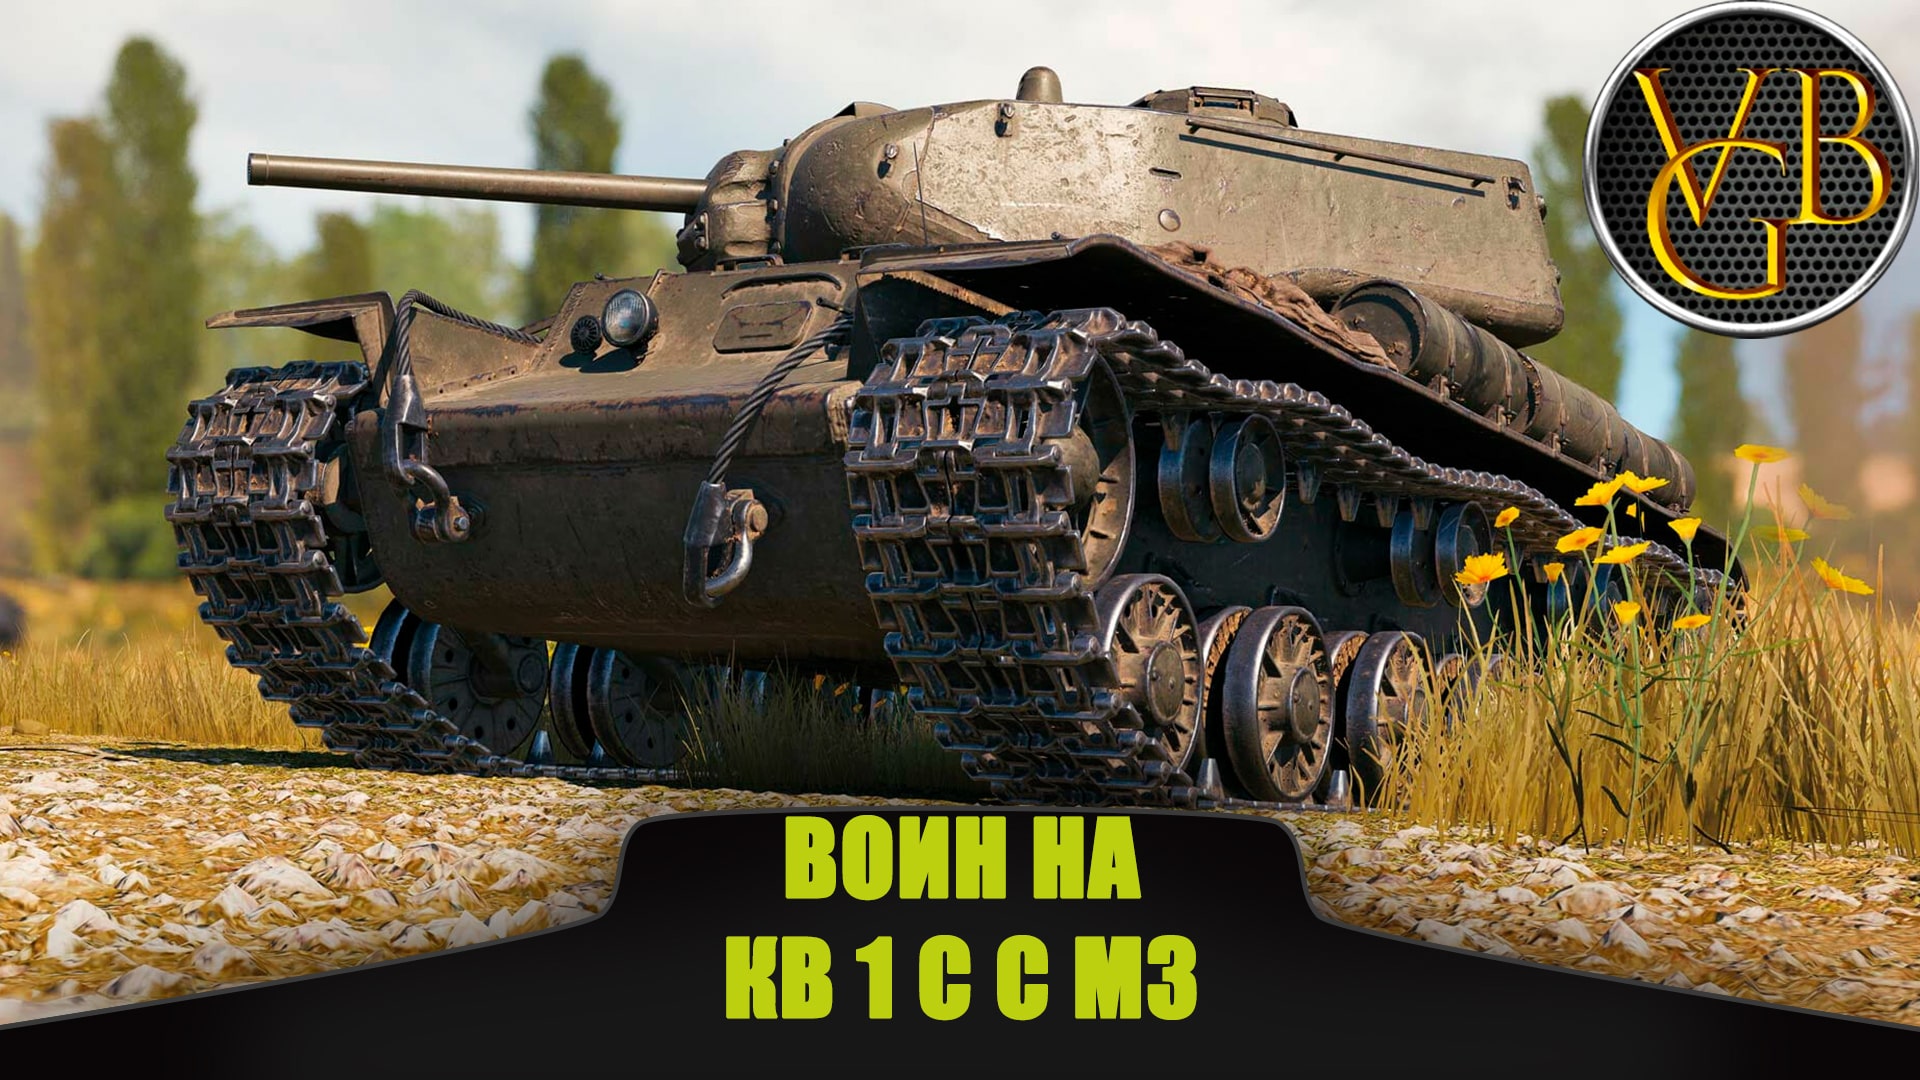 Воин на КВ 1 С с МЗ. (Мир танков)